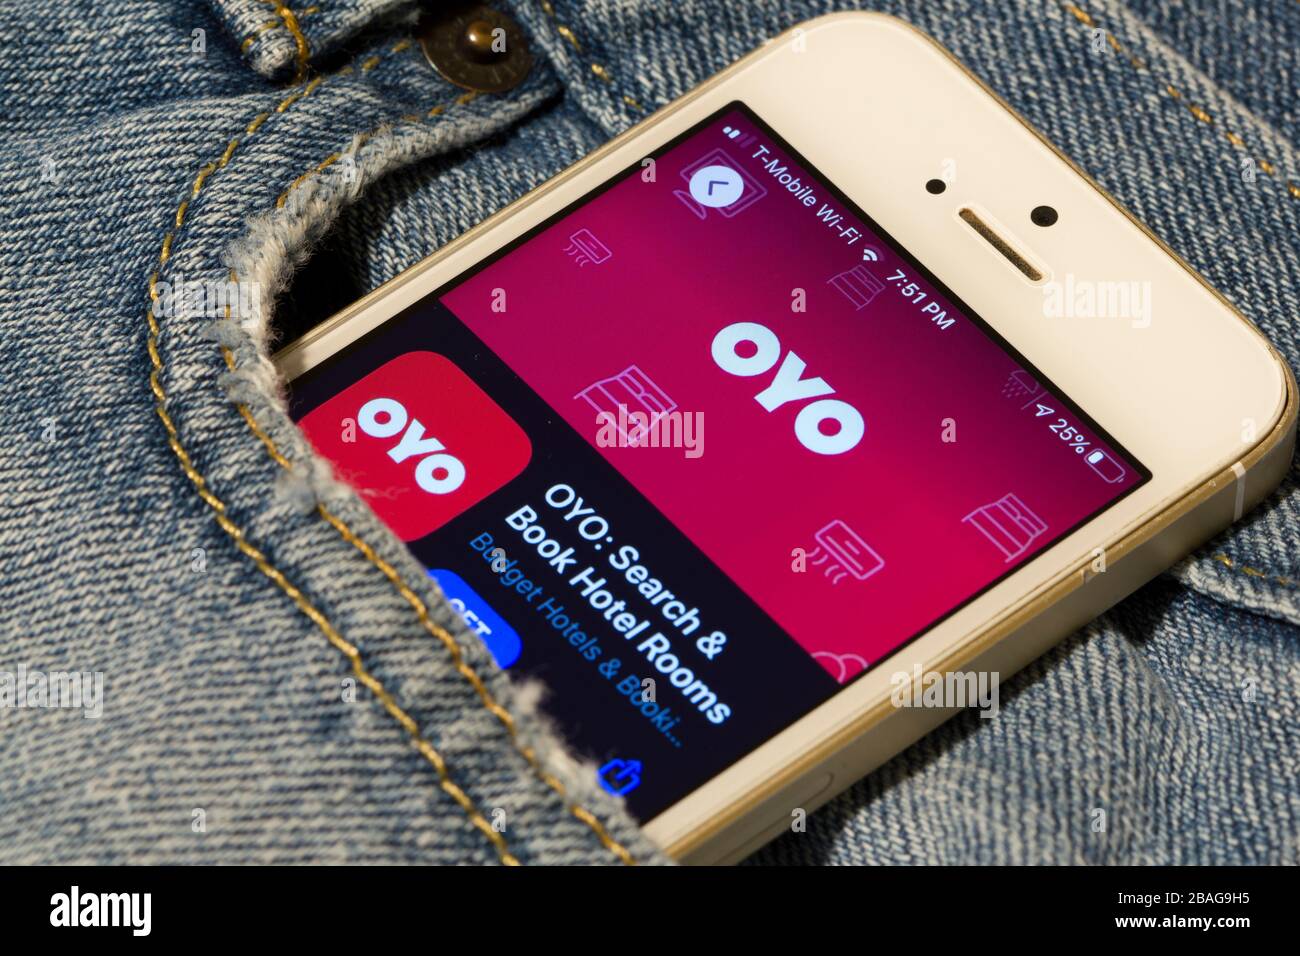 L'icona DELL'app mobile per la prenotazione di un hotel OYO viene visualizzata su uno smartphone. ONO Rooms, stilizzato come OYO e anche noto come Oyo Homes & Hotels, è una catena alberghiera indiana. Foto Stock